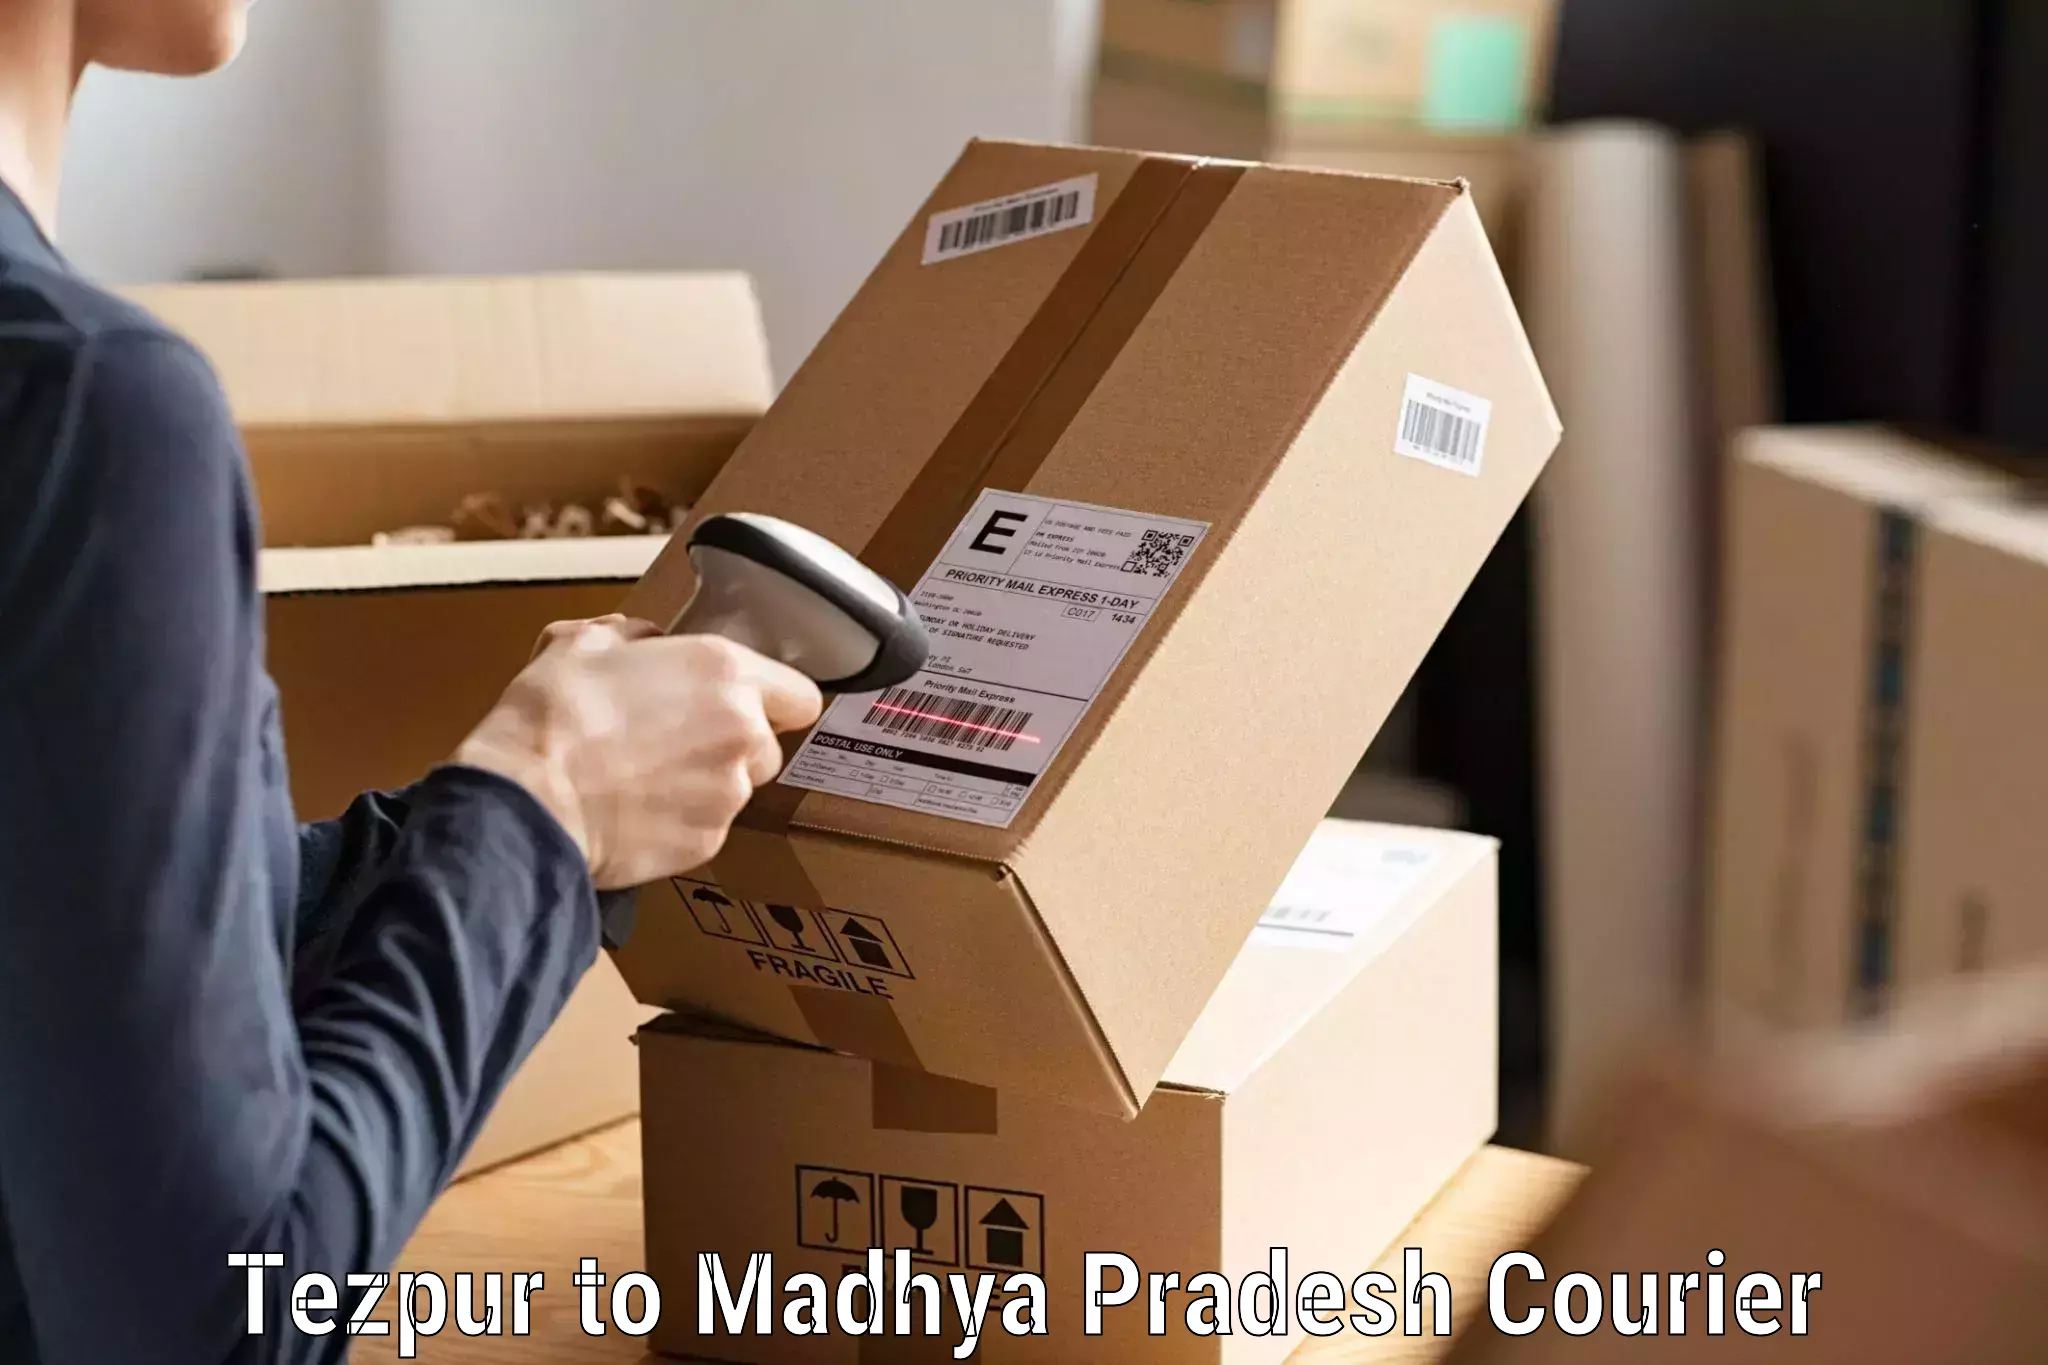 Business shipping needs Tezpur to Madhya Pradesh